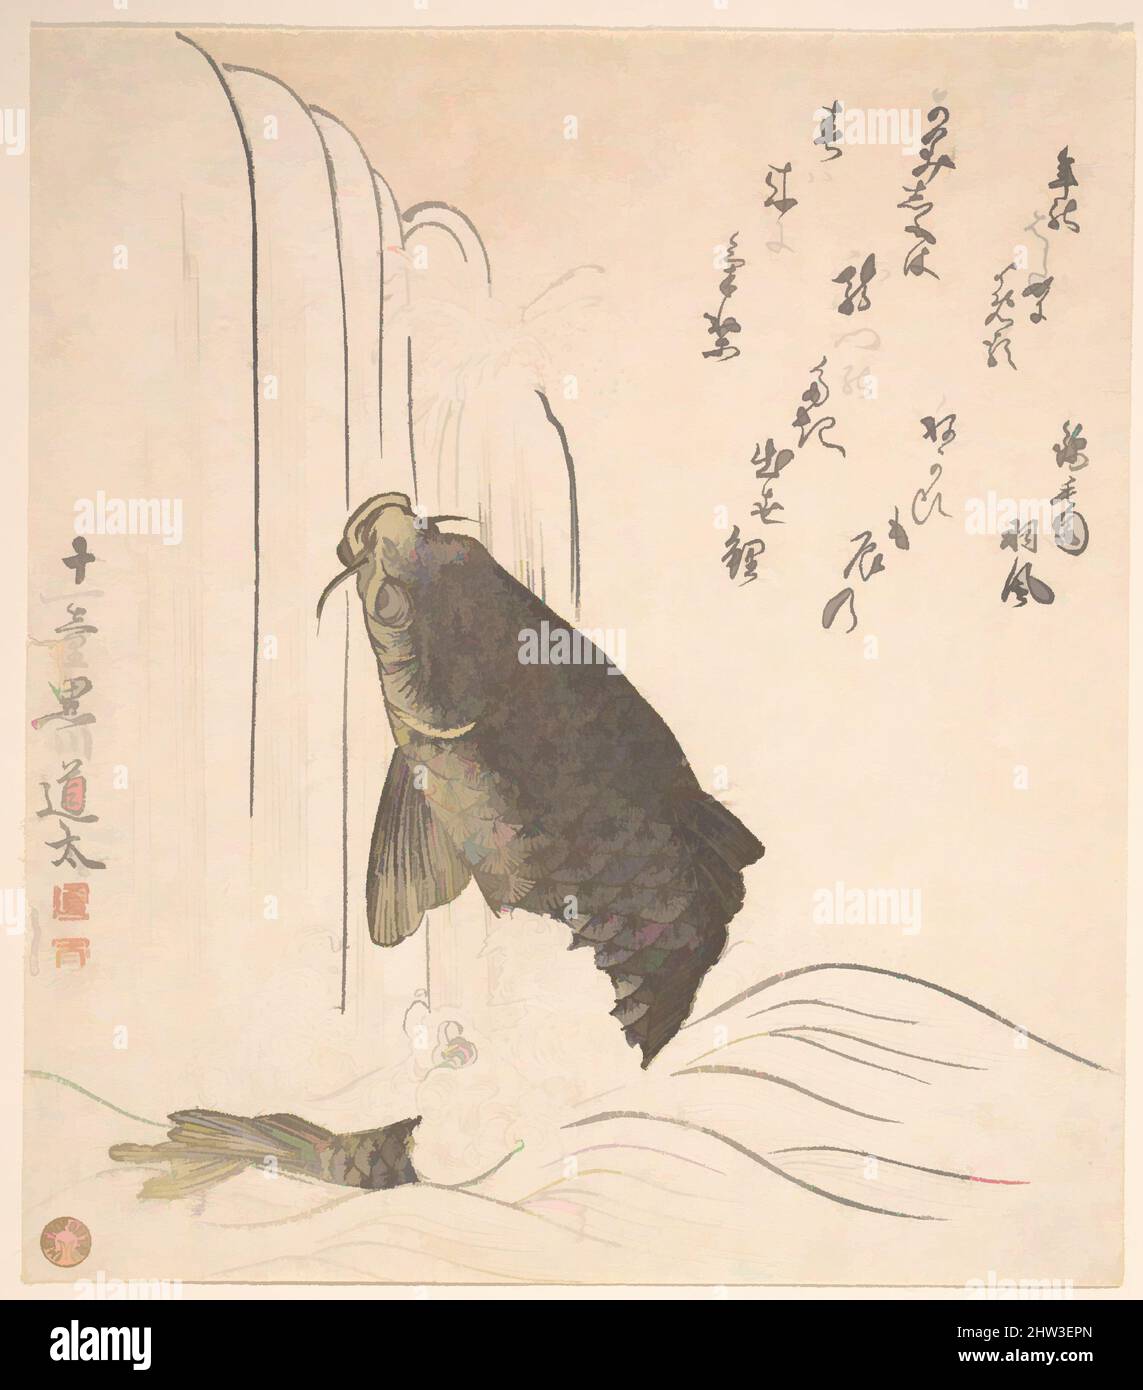 Art inspiré par Carp essayant de nager dans une chute d'eau, période Edo (1615–1868), probablement 1820, Japon, imprimé polychrome sur bois (surimono); encre et couleur sur papier, 8 1/16 x 7 1/16 po. (20,5 x 17,9 cm), Prints, Kurokawa Michita (japonais, actif début du 19th siècle, oeuvres classiques modernisées par Artotop avec une touche de modernité. Formes, couleur et valeur, impact visuel accrocheur sur l'art émotions par la liberté d'œuvres d'art d'une manière contemporaine. Un message intemporel qui cherche une nouvelle direction créative. Artistes qui se tournent vers le support numérique et créent le NFT Artotop Banque D'Images